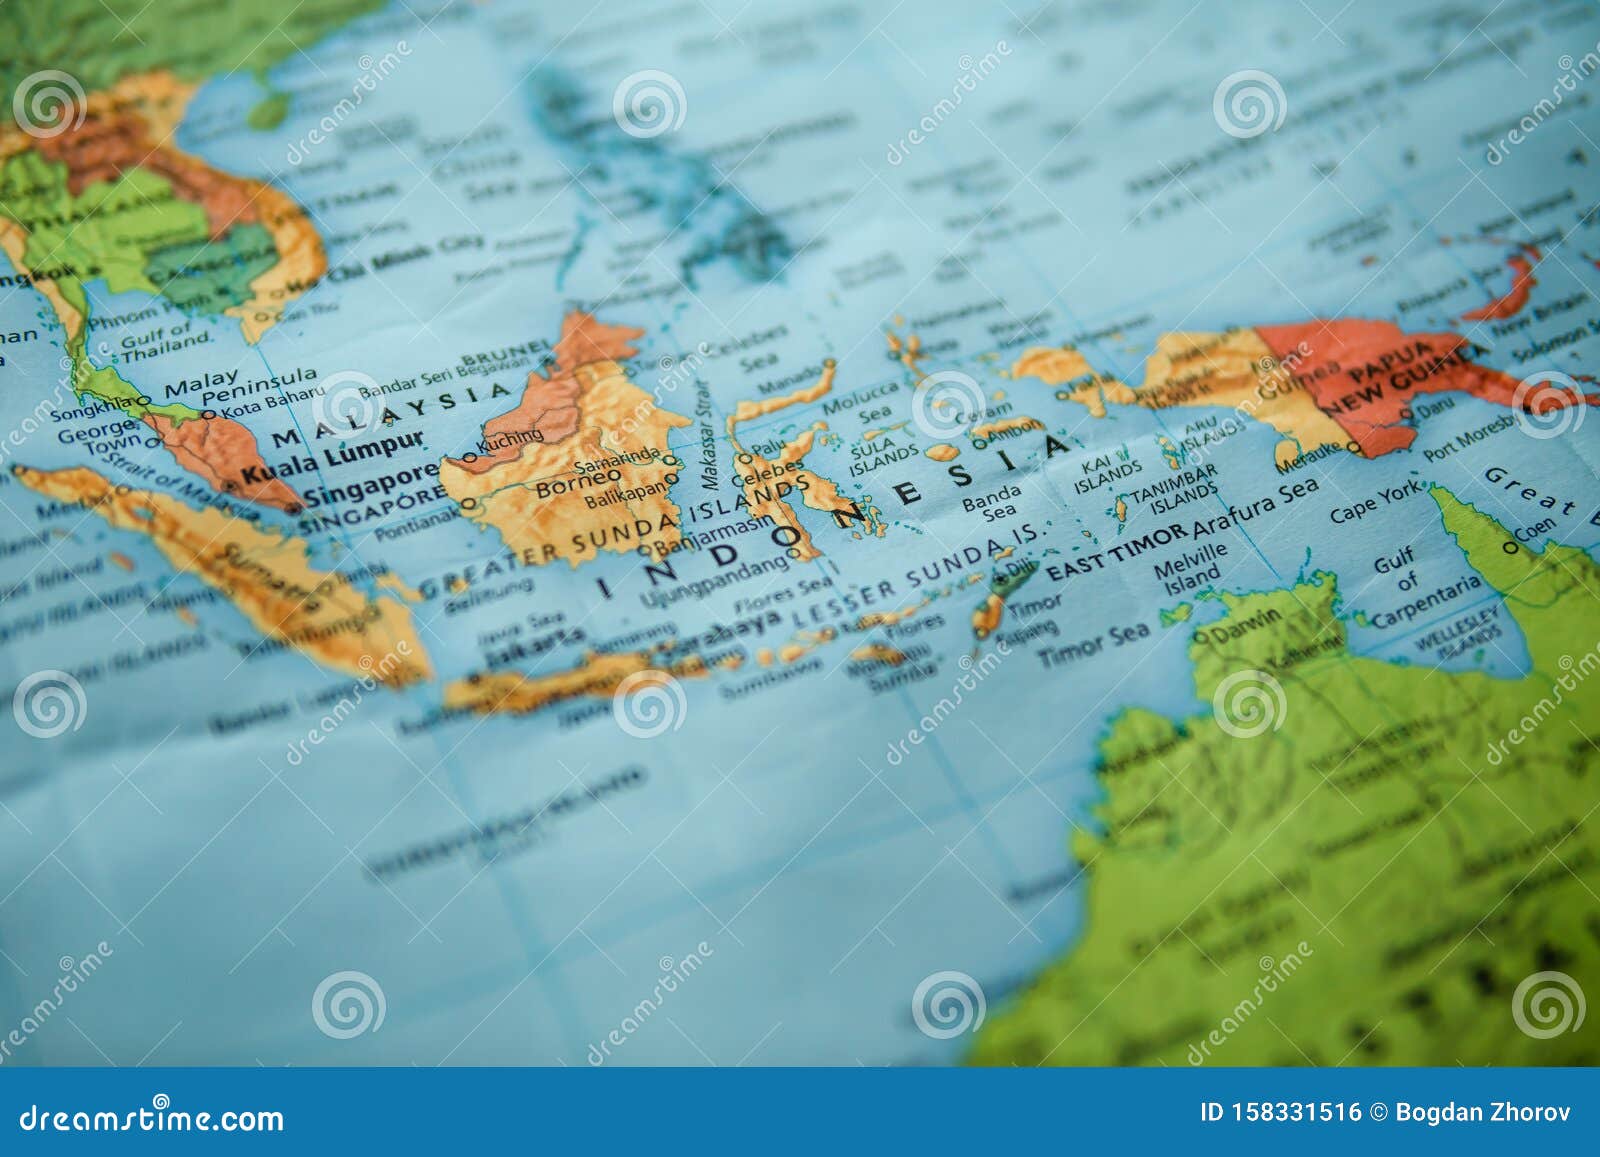  Indonesien  auf der Karte stockfoto Bild von karte 